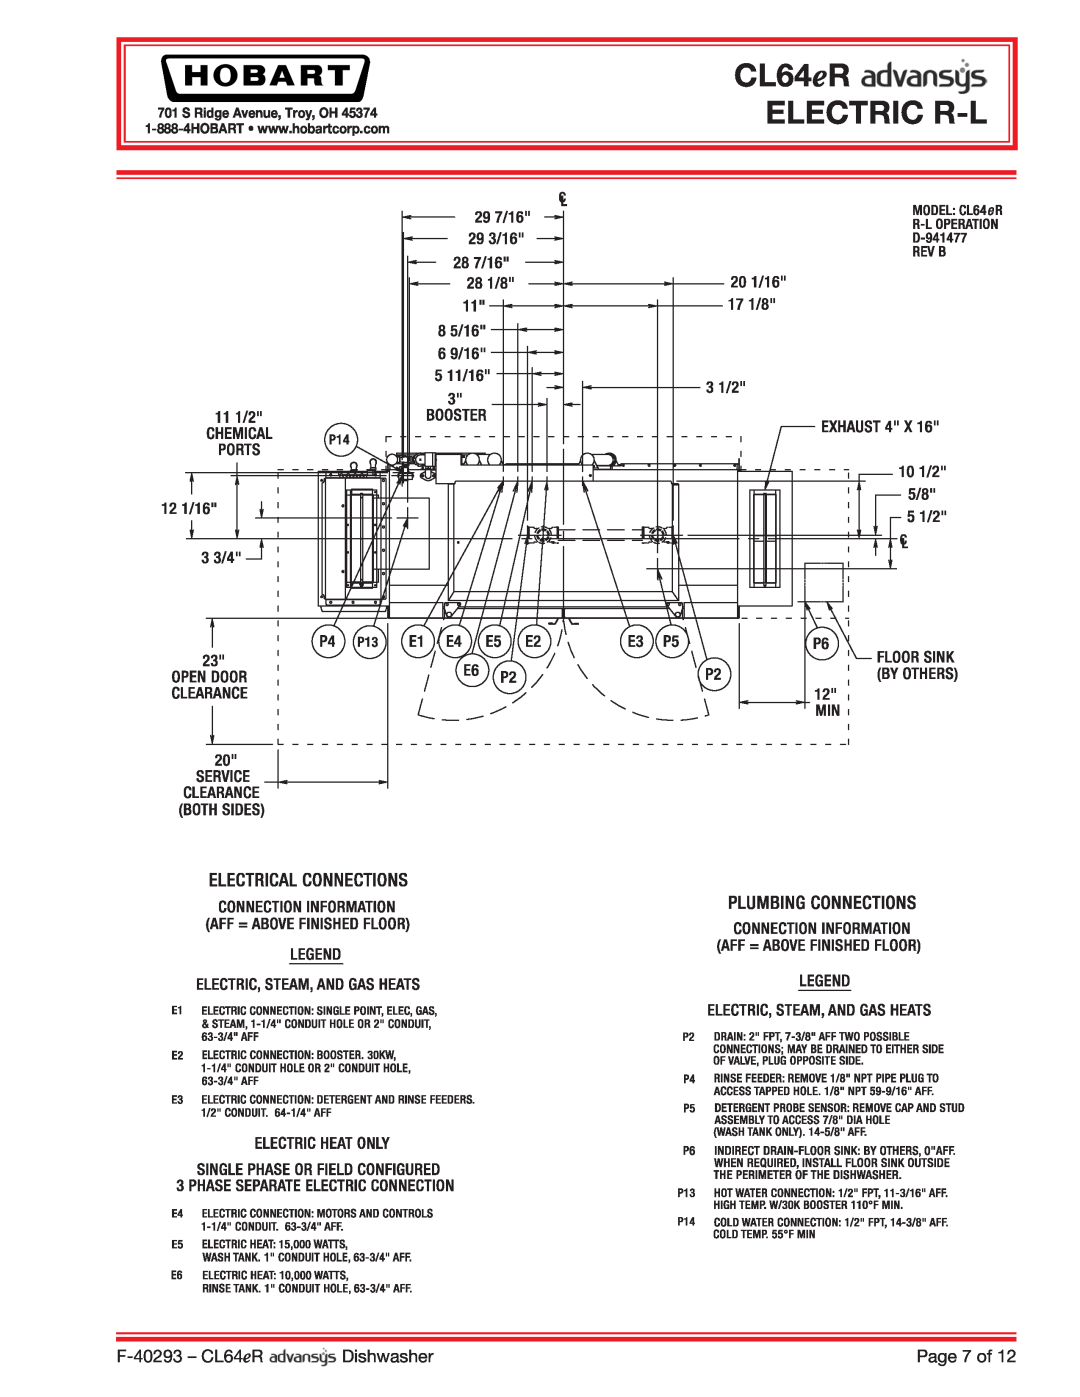 Hobart CL64ER dimensions CL64eR ELECTRIC R-L, F-40293 - CL64eR, Dishwasher, Page 7 of, S Ridge Avenue, Troy, OH 